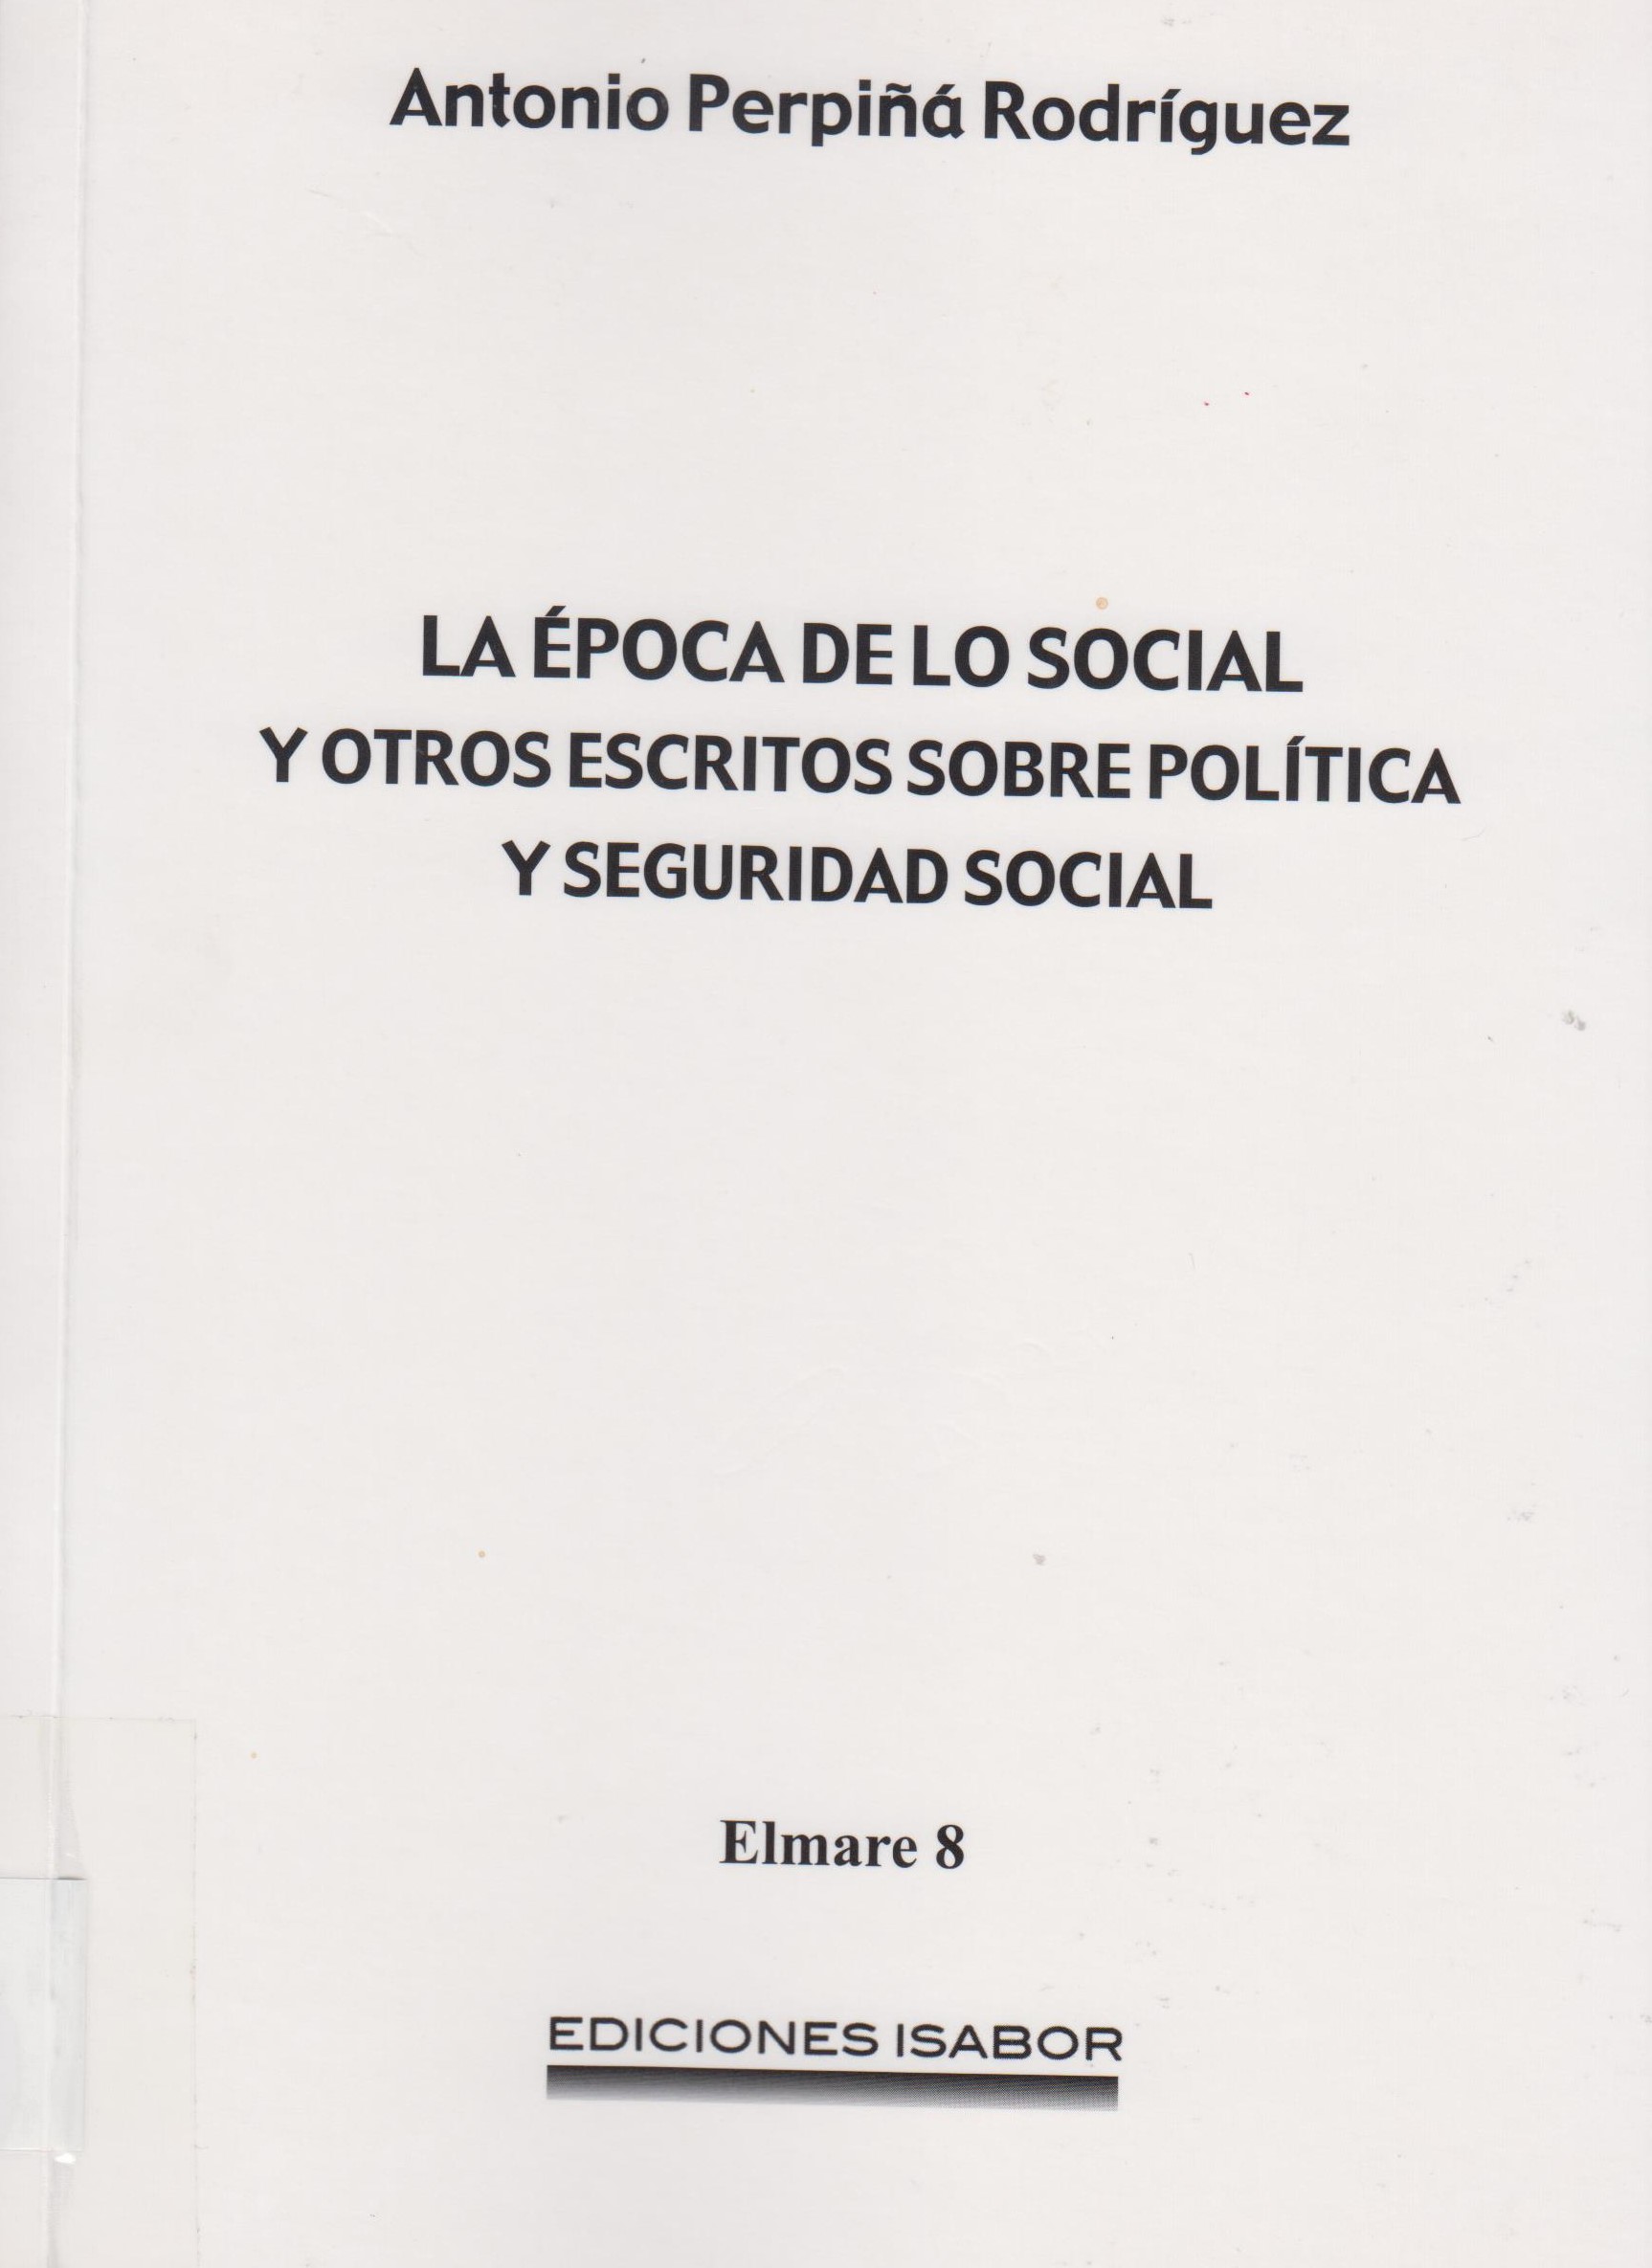 Imagen de portada del libro La época de lo social y otros escritos sobre política y seguridad social